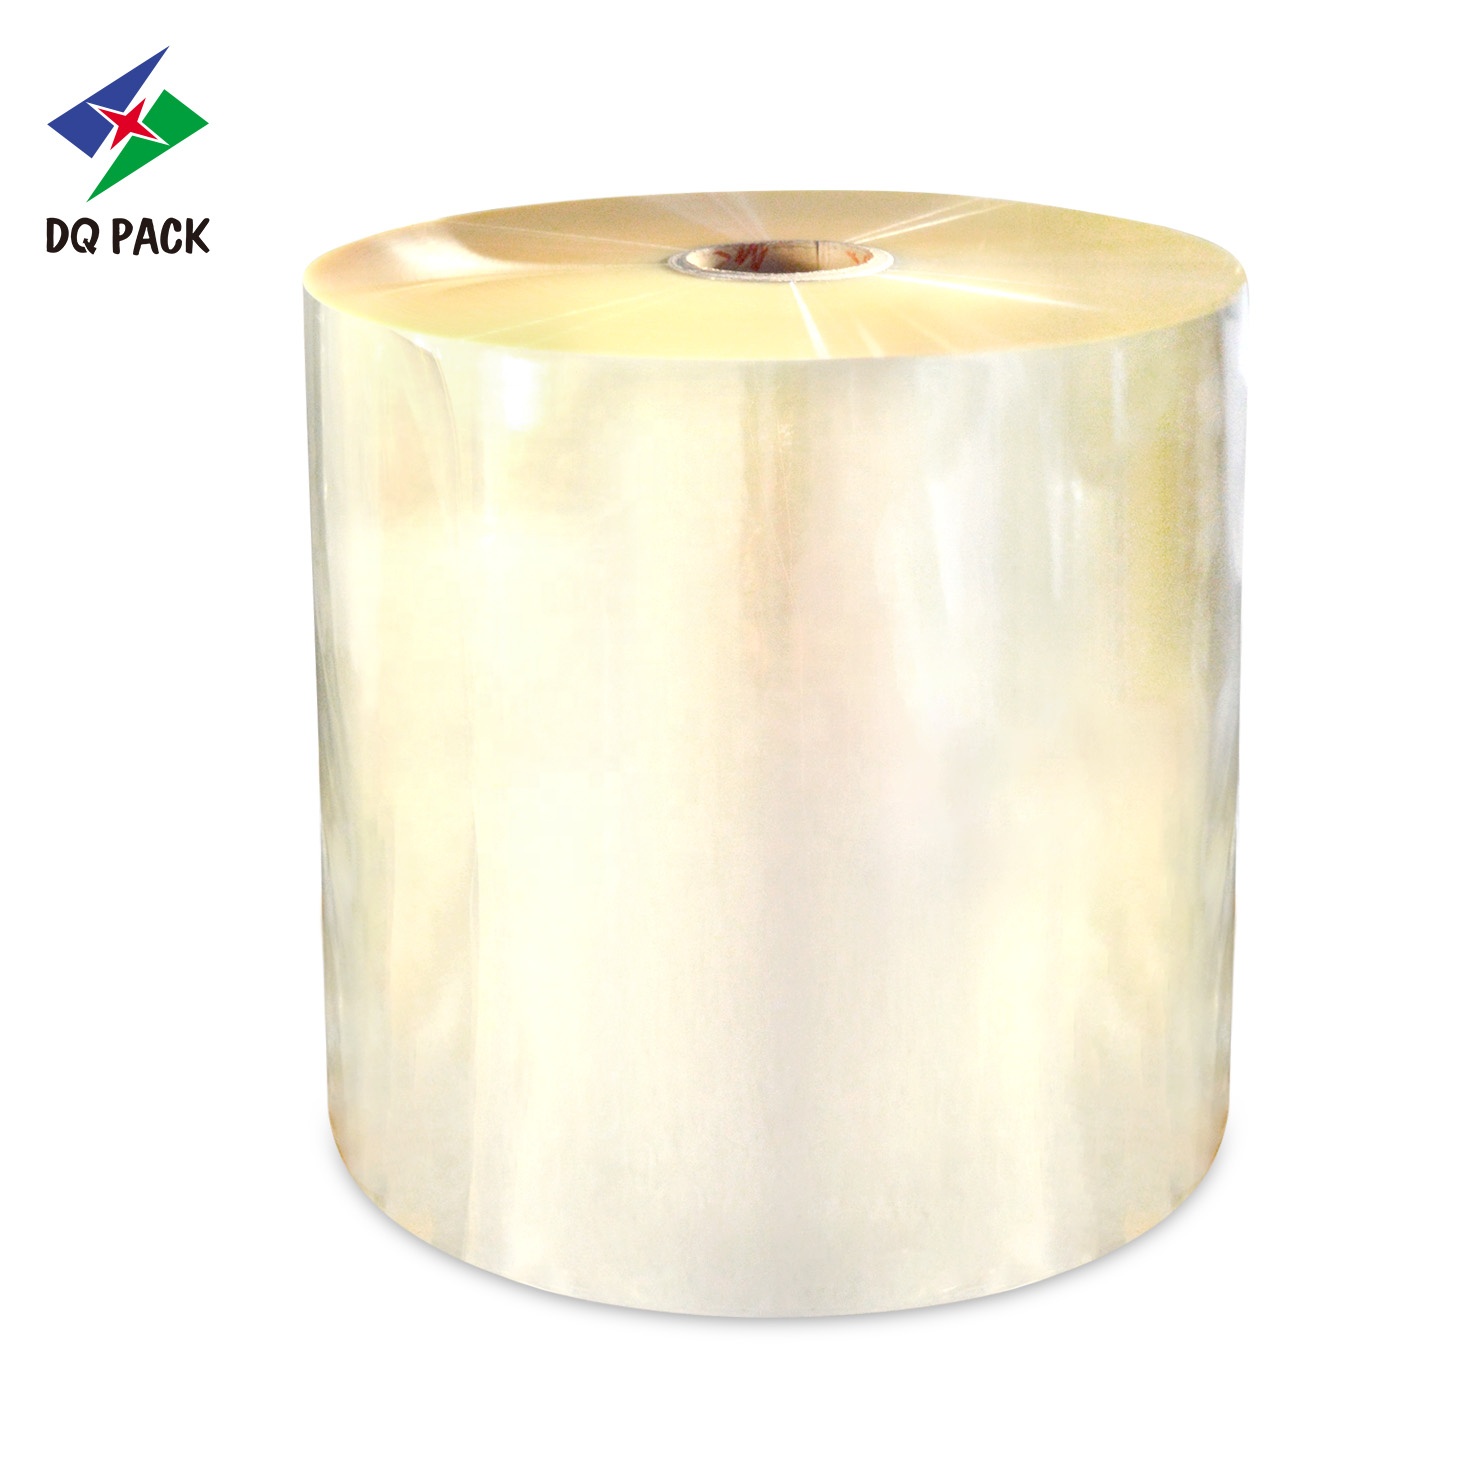 DQ PACK 35mic/40mic high transparent China shrink PVC roll film